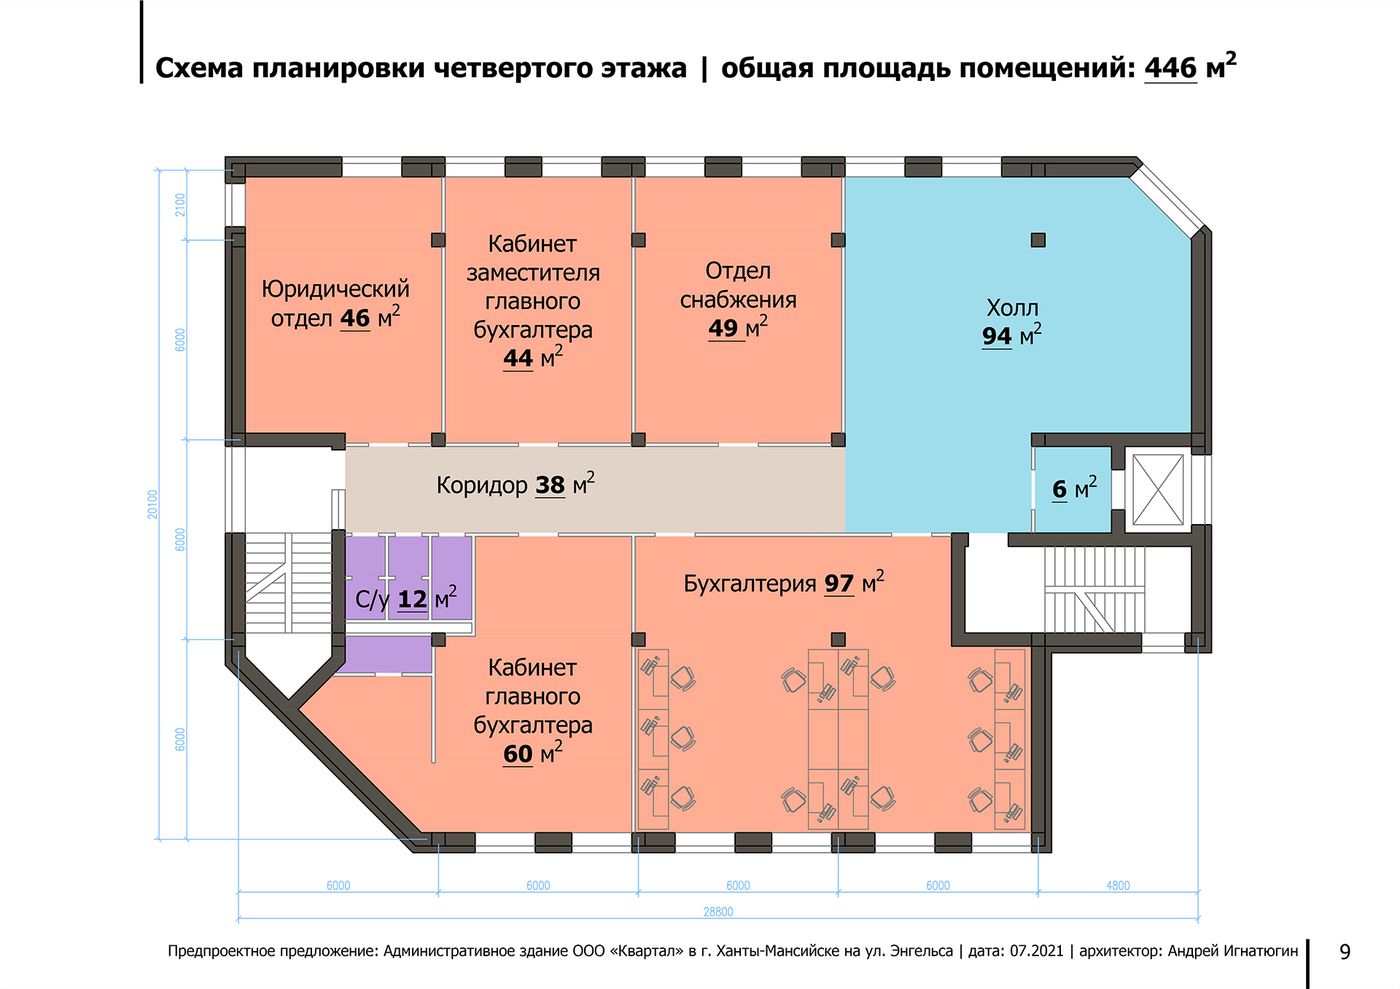 Схема планировки четвёртого этажа